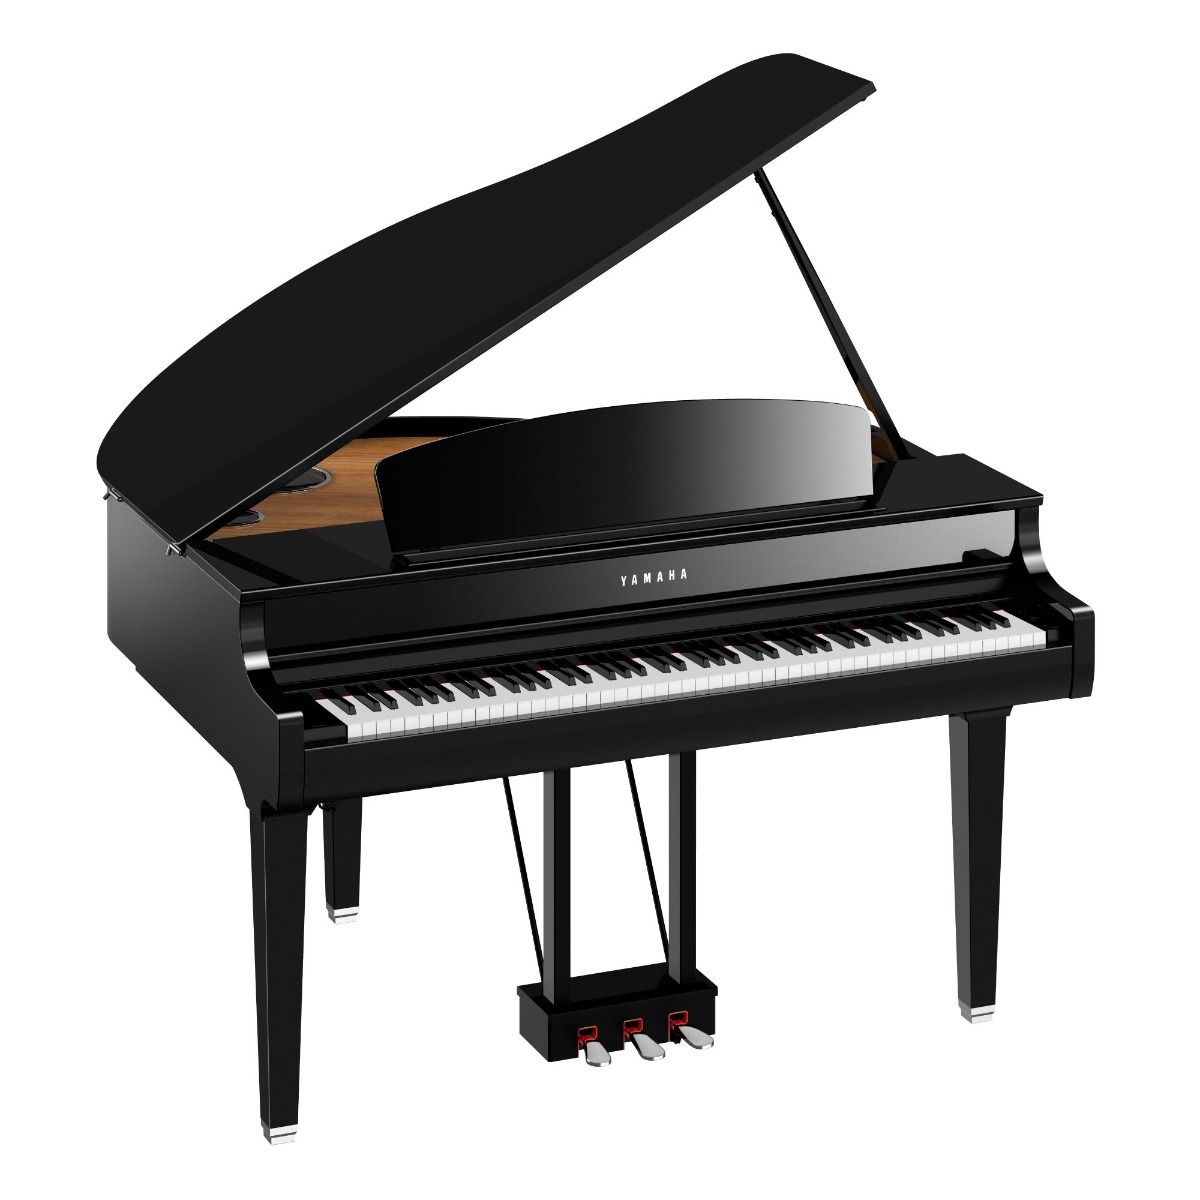 Yamaha CLP-795GP Clavinova Grand Piano in Polished Ebony Finish